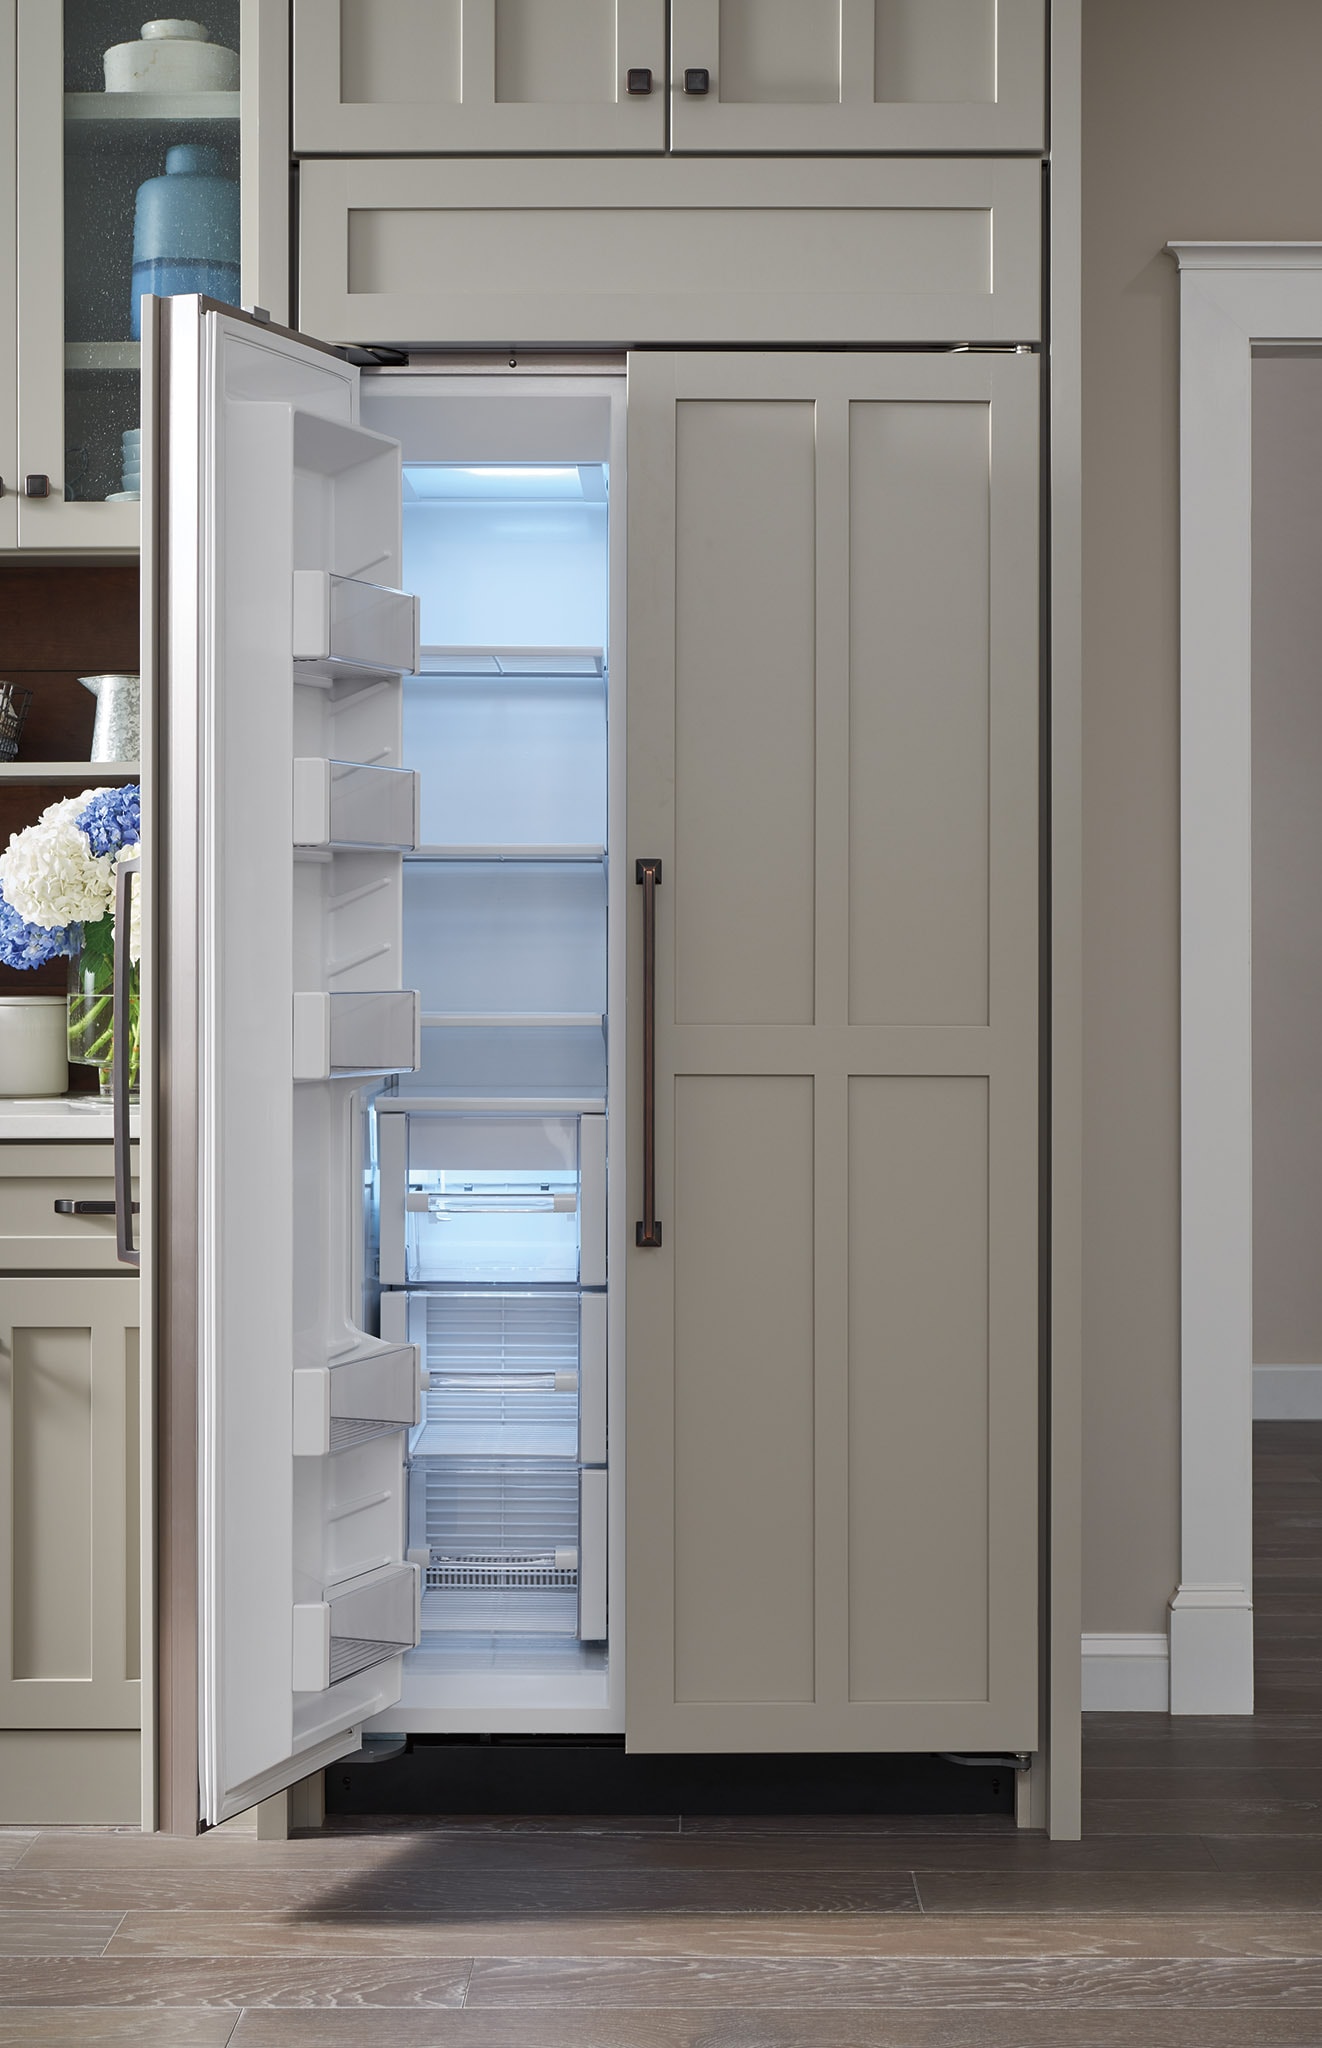 Sub-Zero 36" Classic Side-by-Side Refrigerator/Freezer - Panel Ready